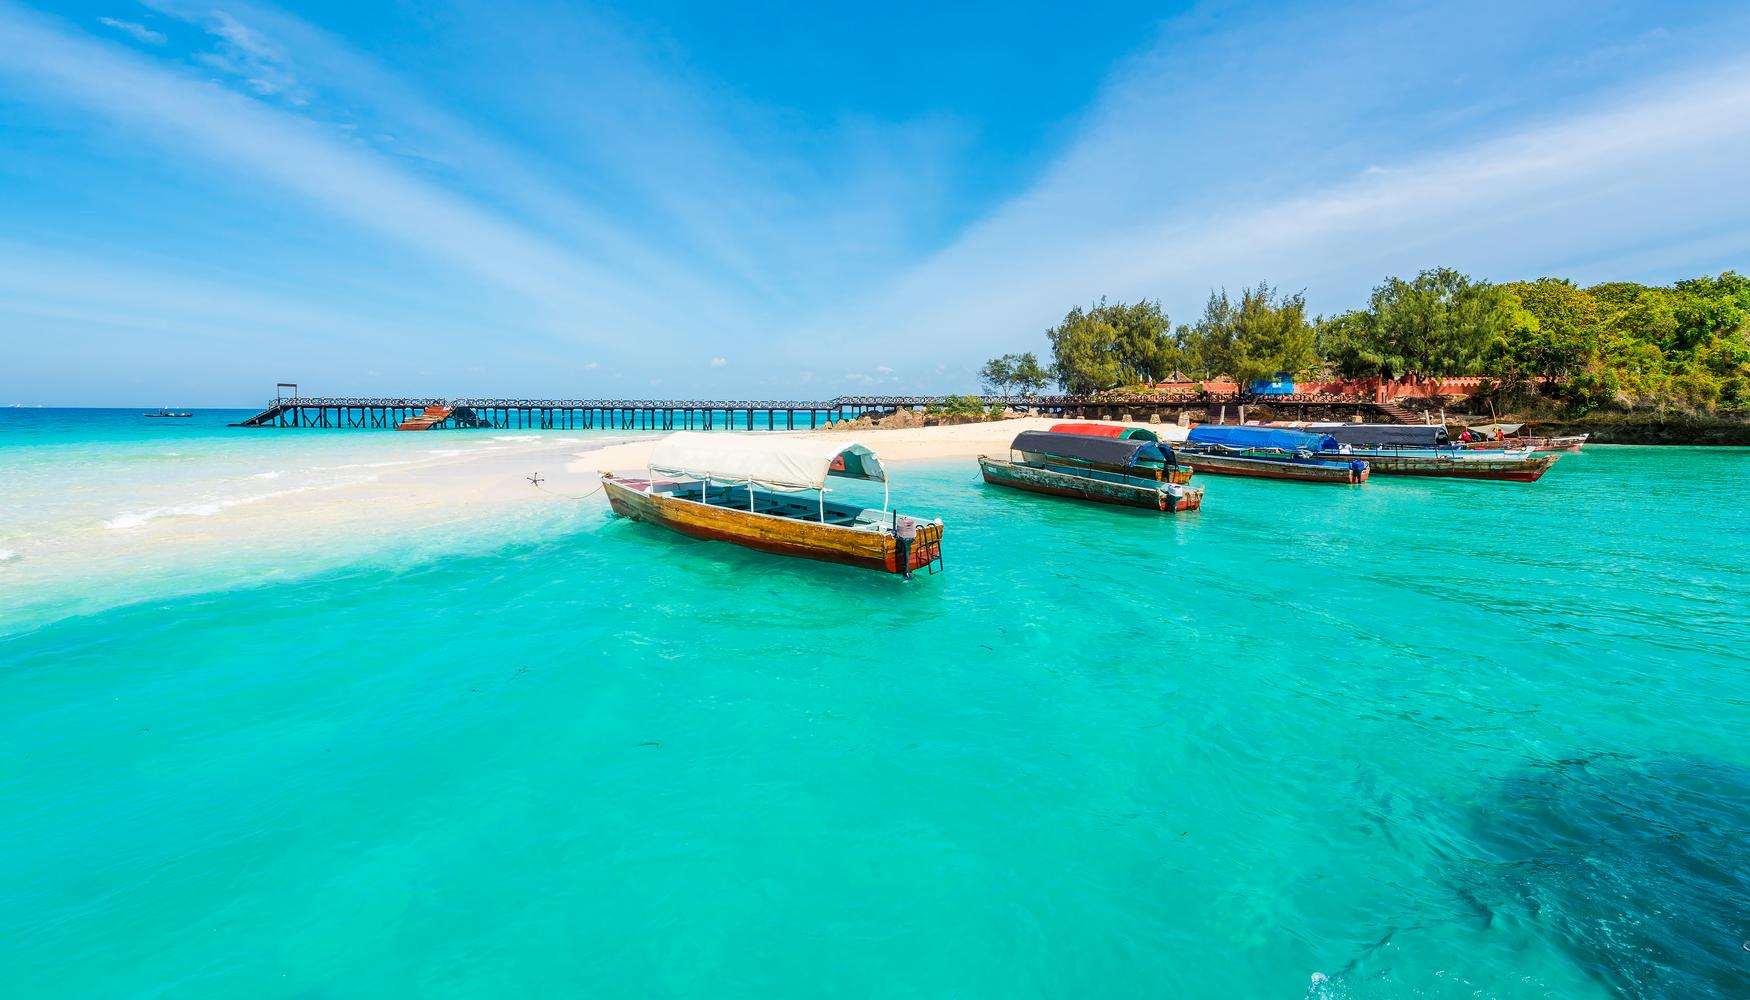 Guia de viagem: Zanzibar | Turismo em Zanzibar - KAYAK